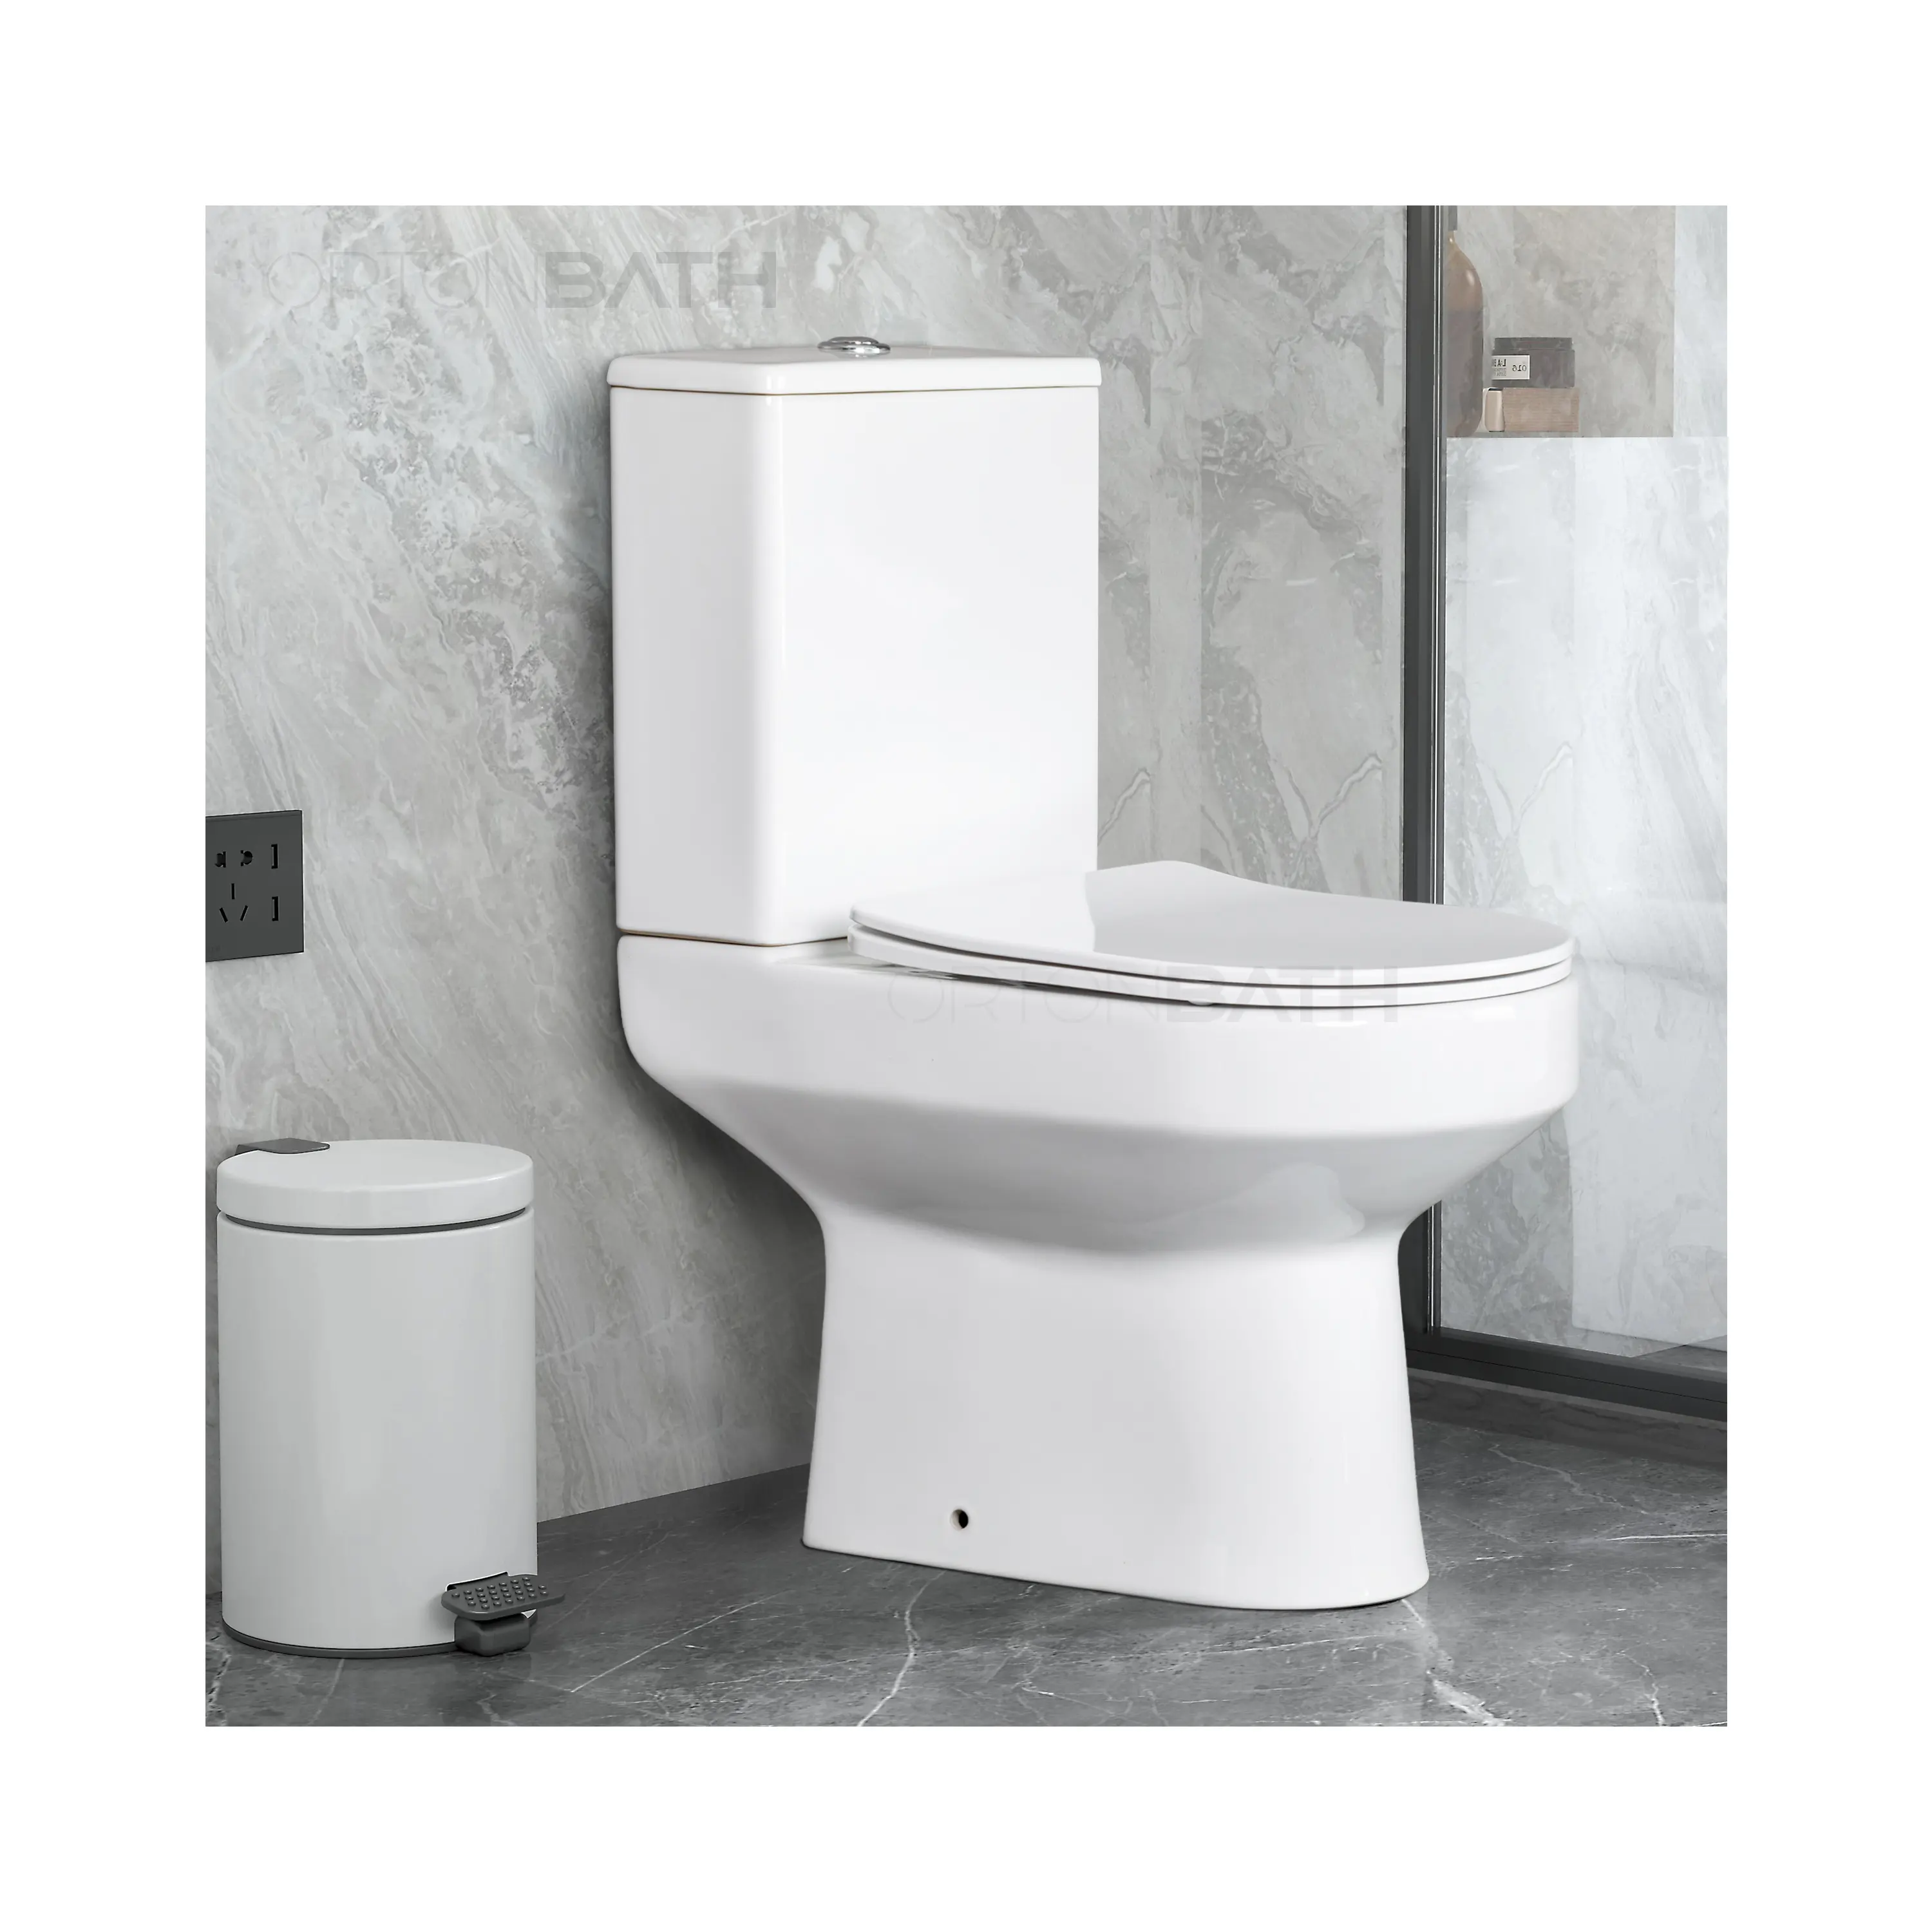 Ortonbath Toilet kecil gaya Eropa UK p-trap untuk kamar mandi keramik dua bagian Wc lemari air sanitasi Toilet